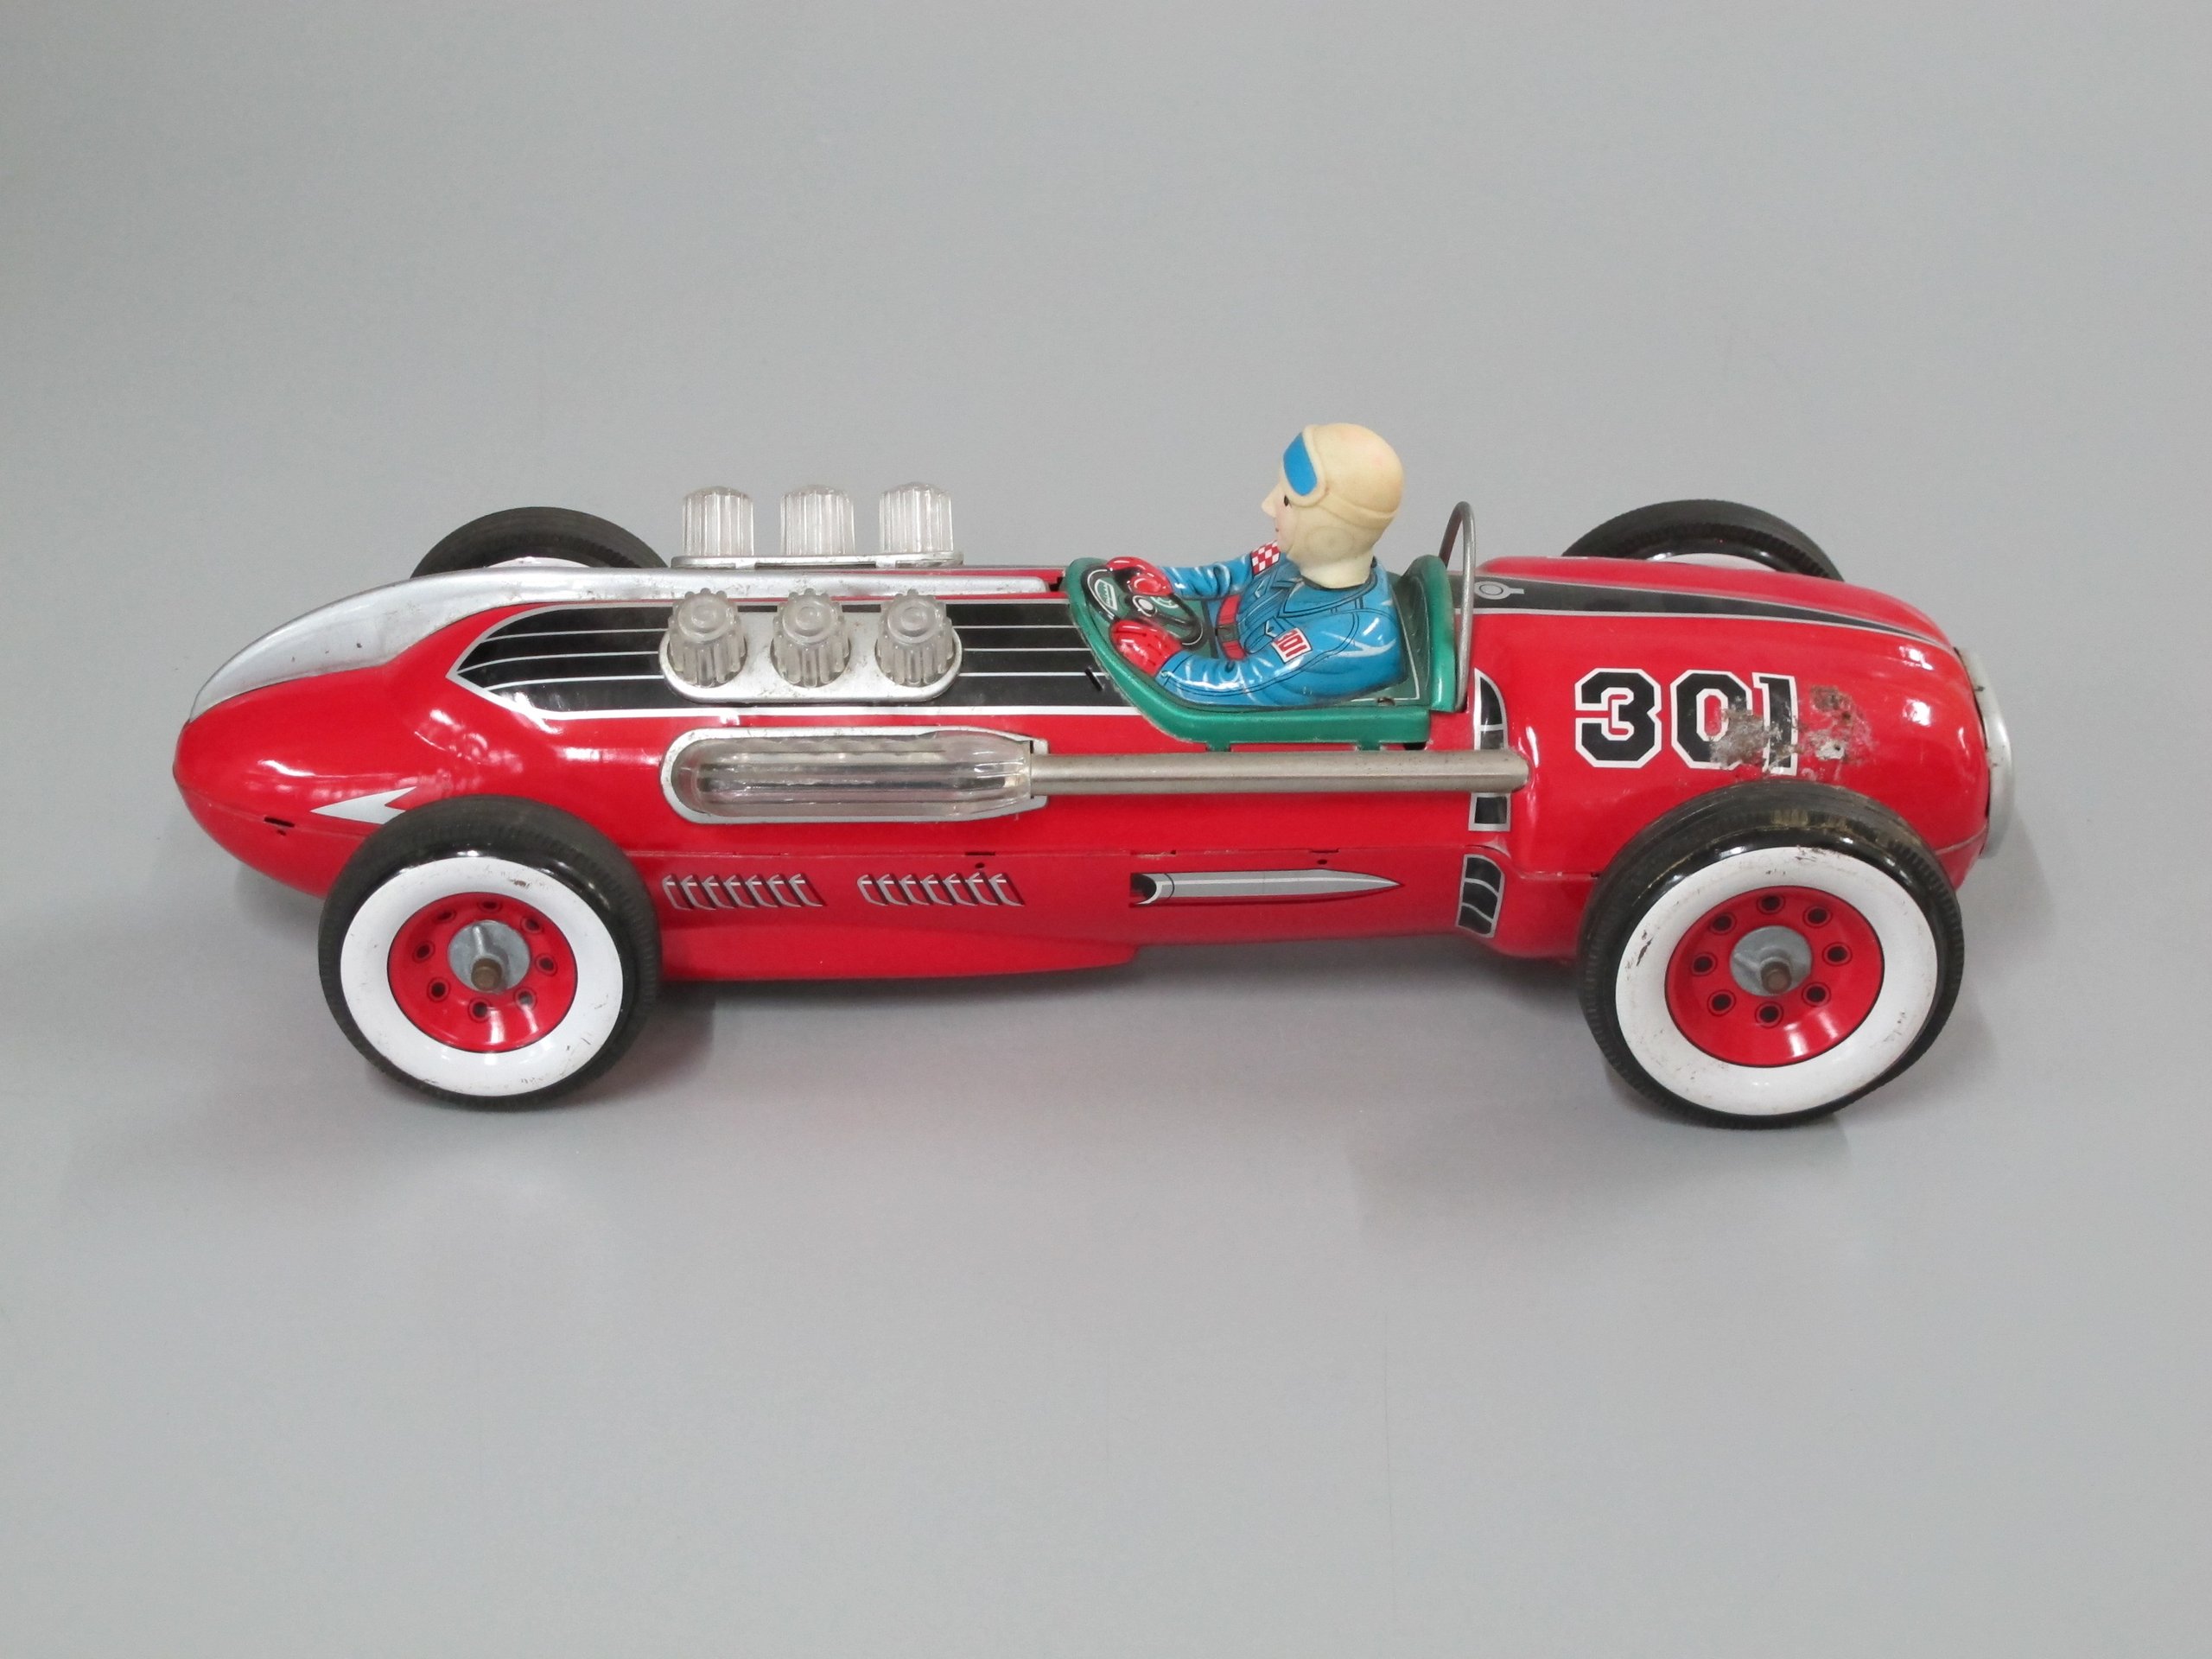 Toy racing car